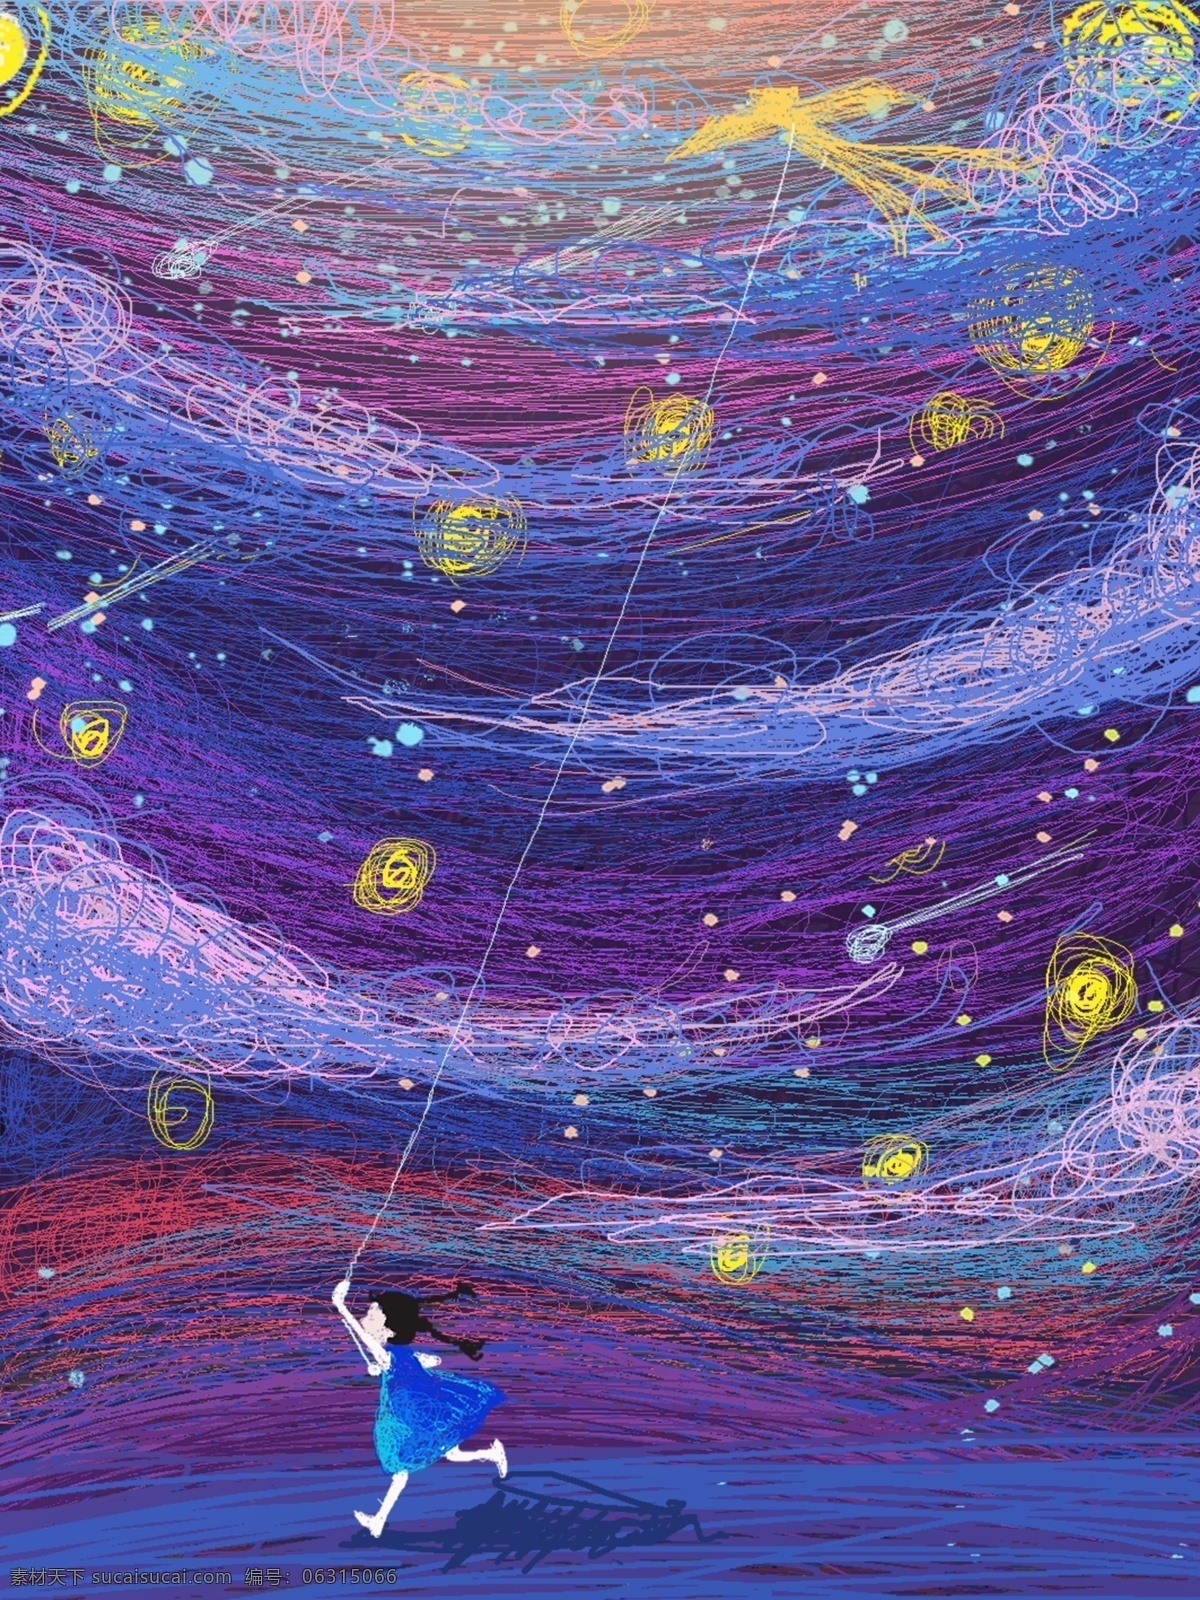 星空 下 渴望 飞翔 小孩 原稿 天空 插画 头像 治愈 少女 风筝 云彩 设计手绘 手机壁纸 幻想 线圈